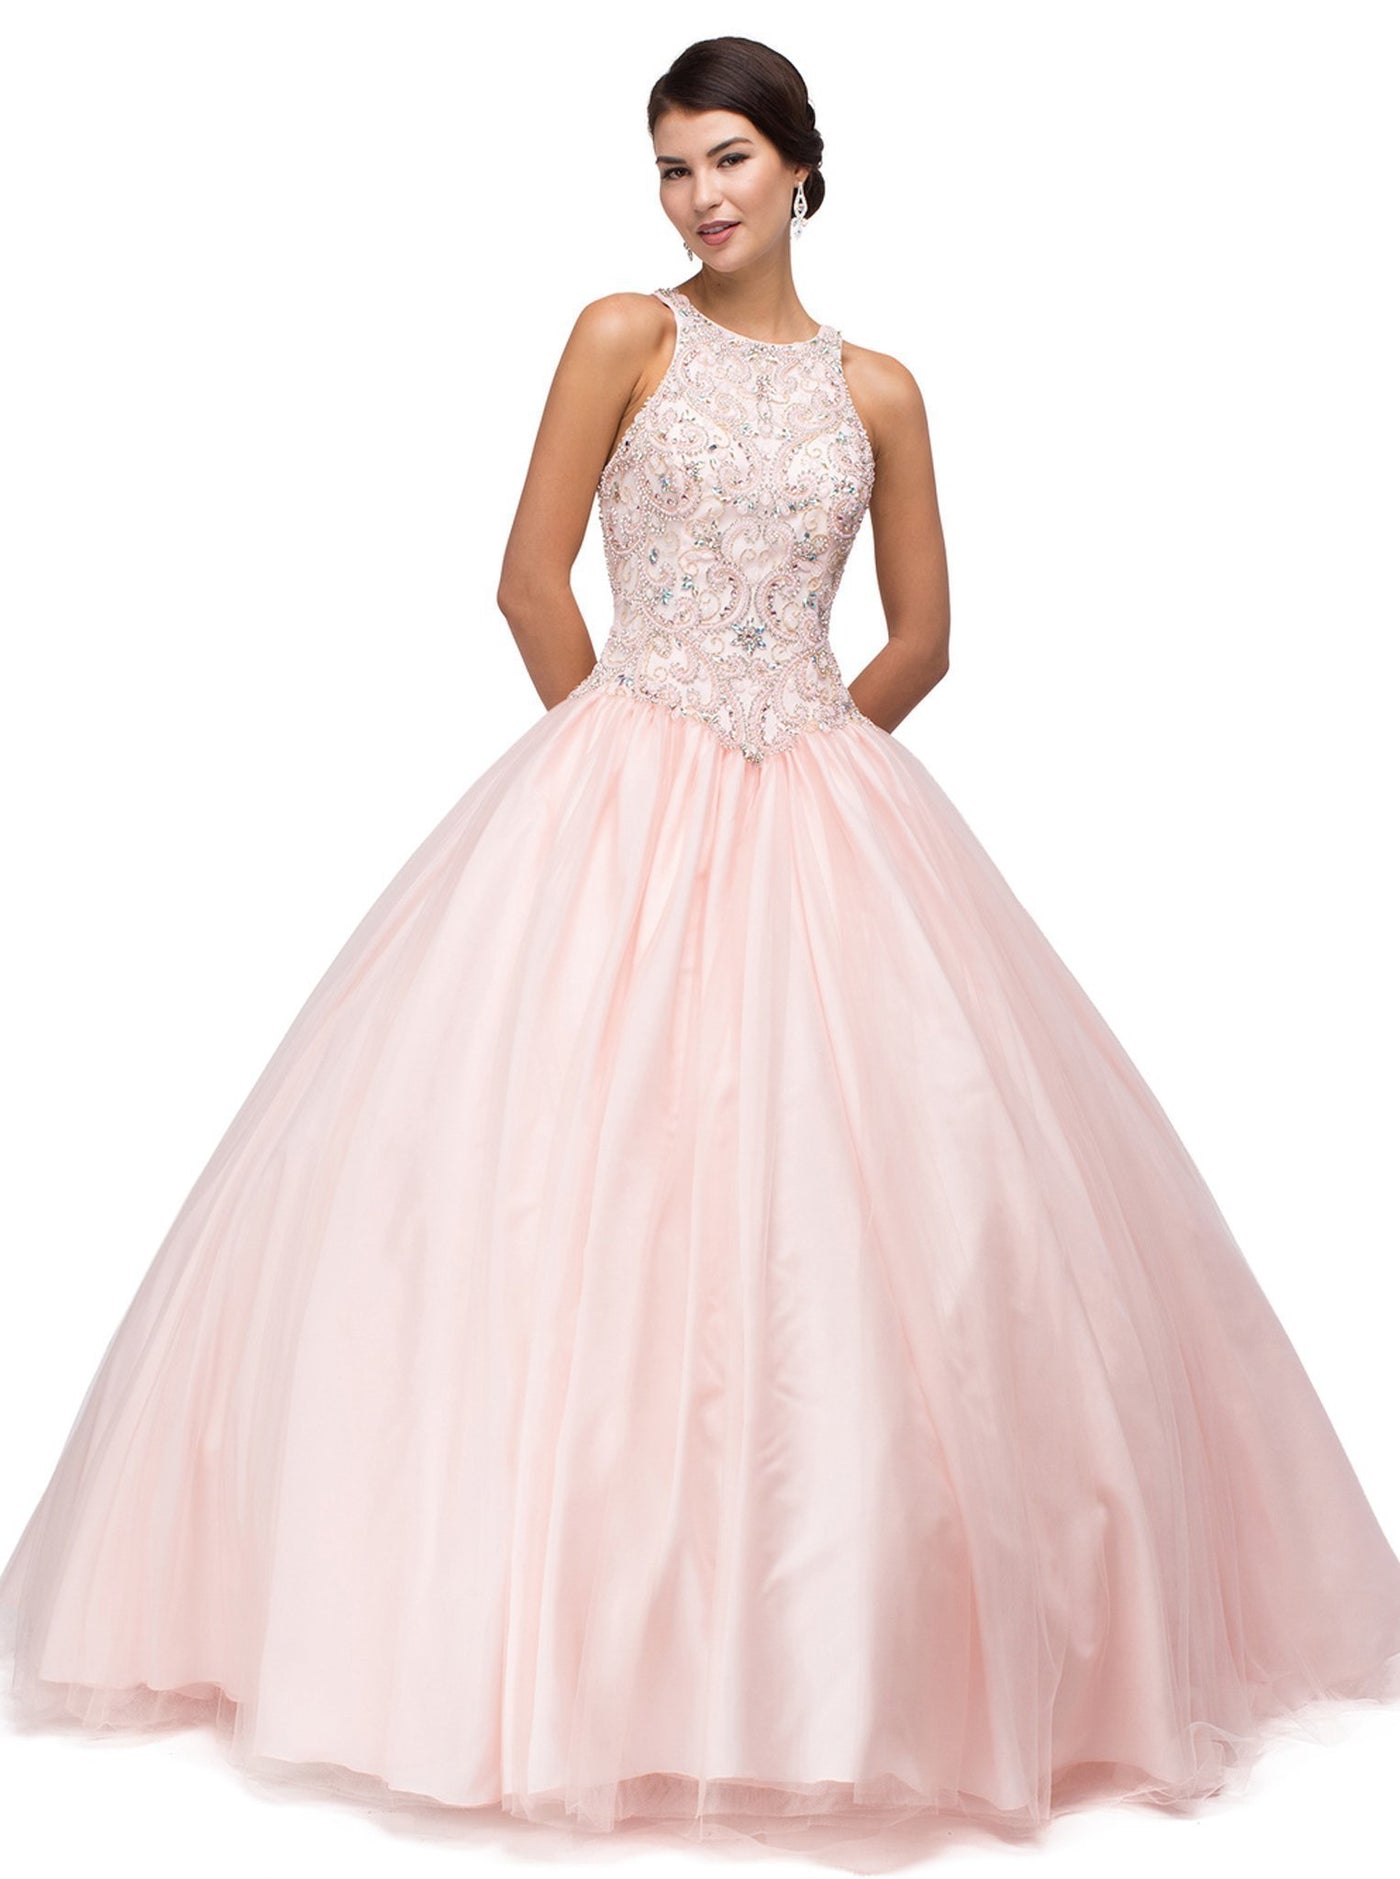 Dancing Queen - Beaded Jewel Quinceanera Ball Gown 1164 In Pink